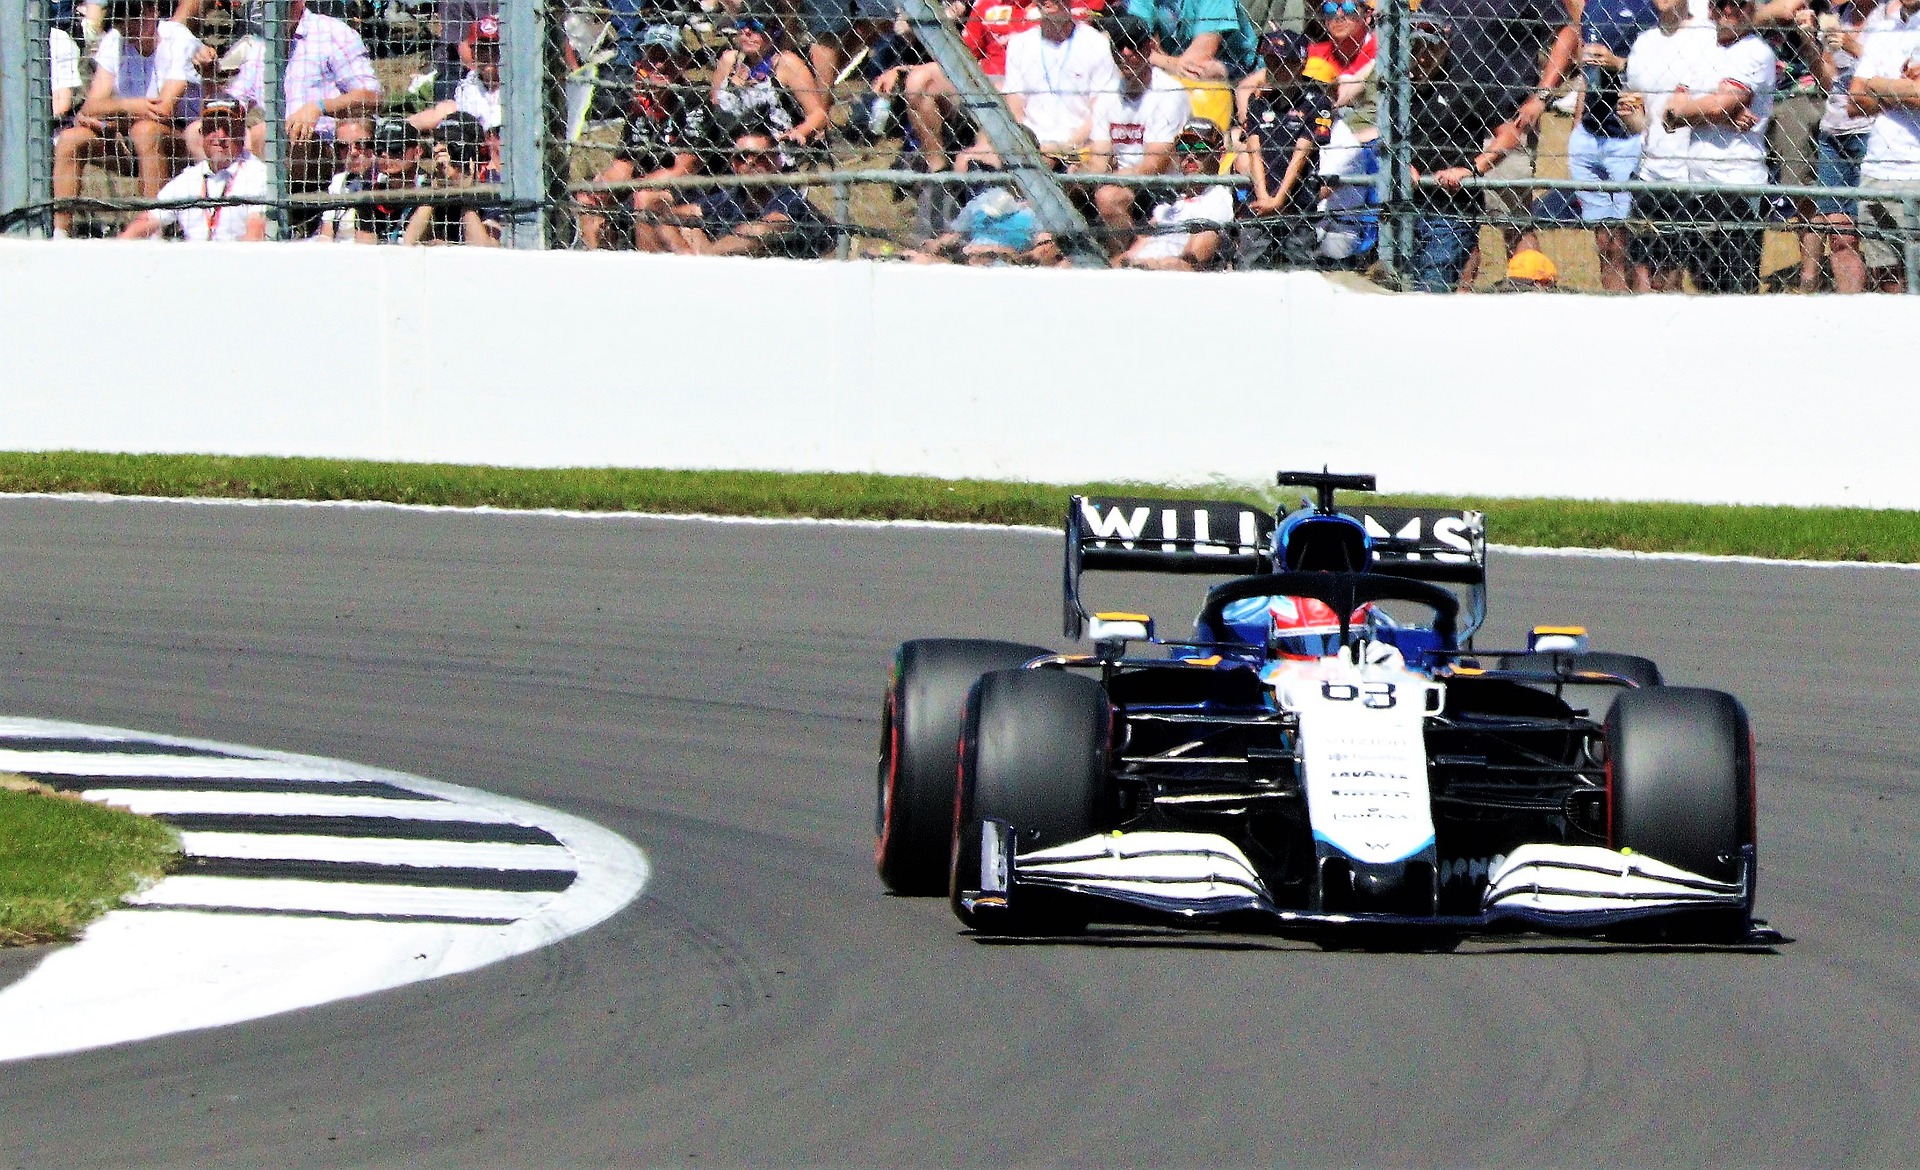 Williams F1 2022, domani la presentazione.